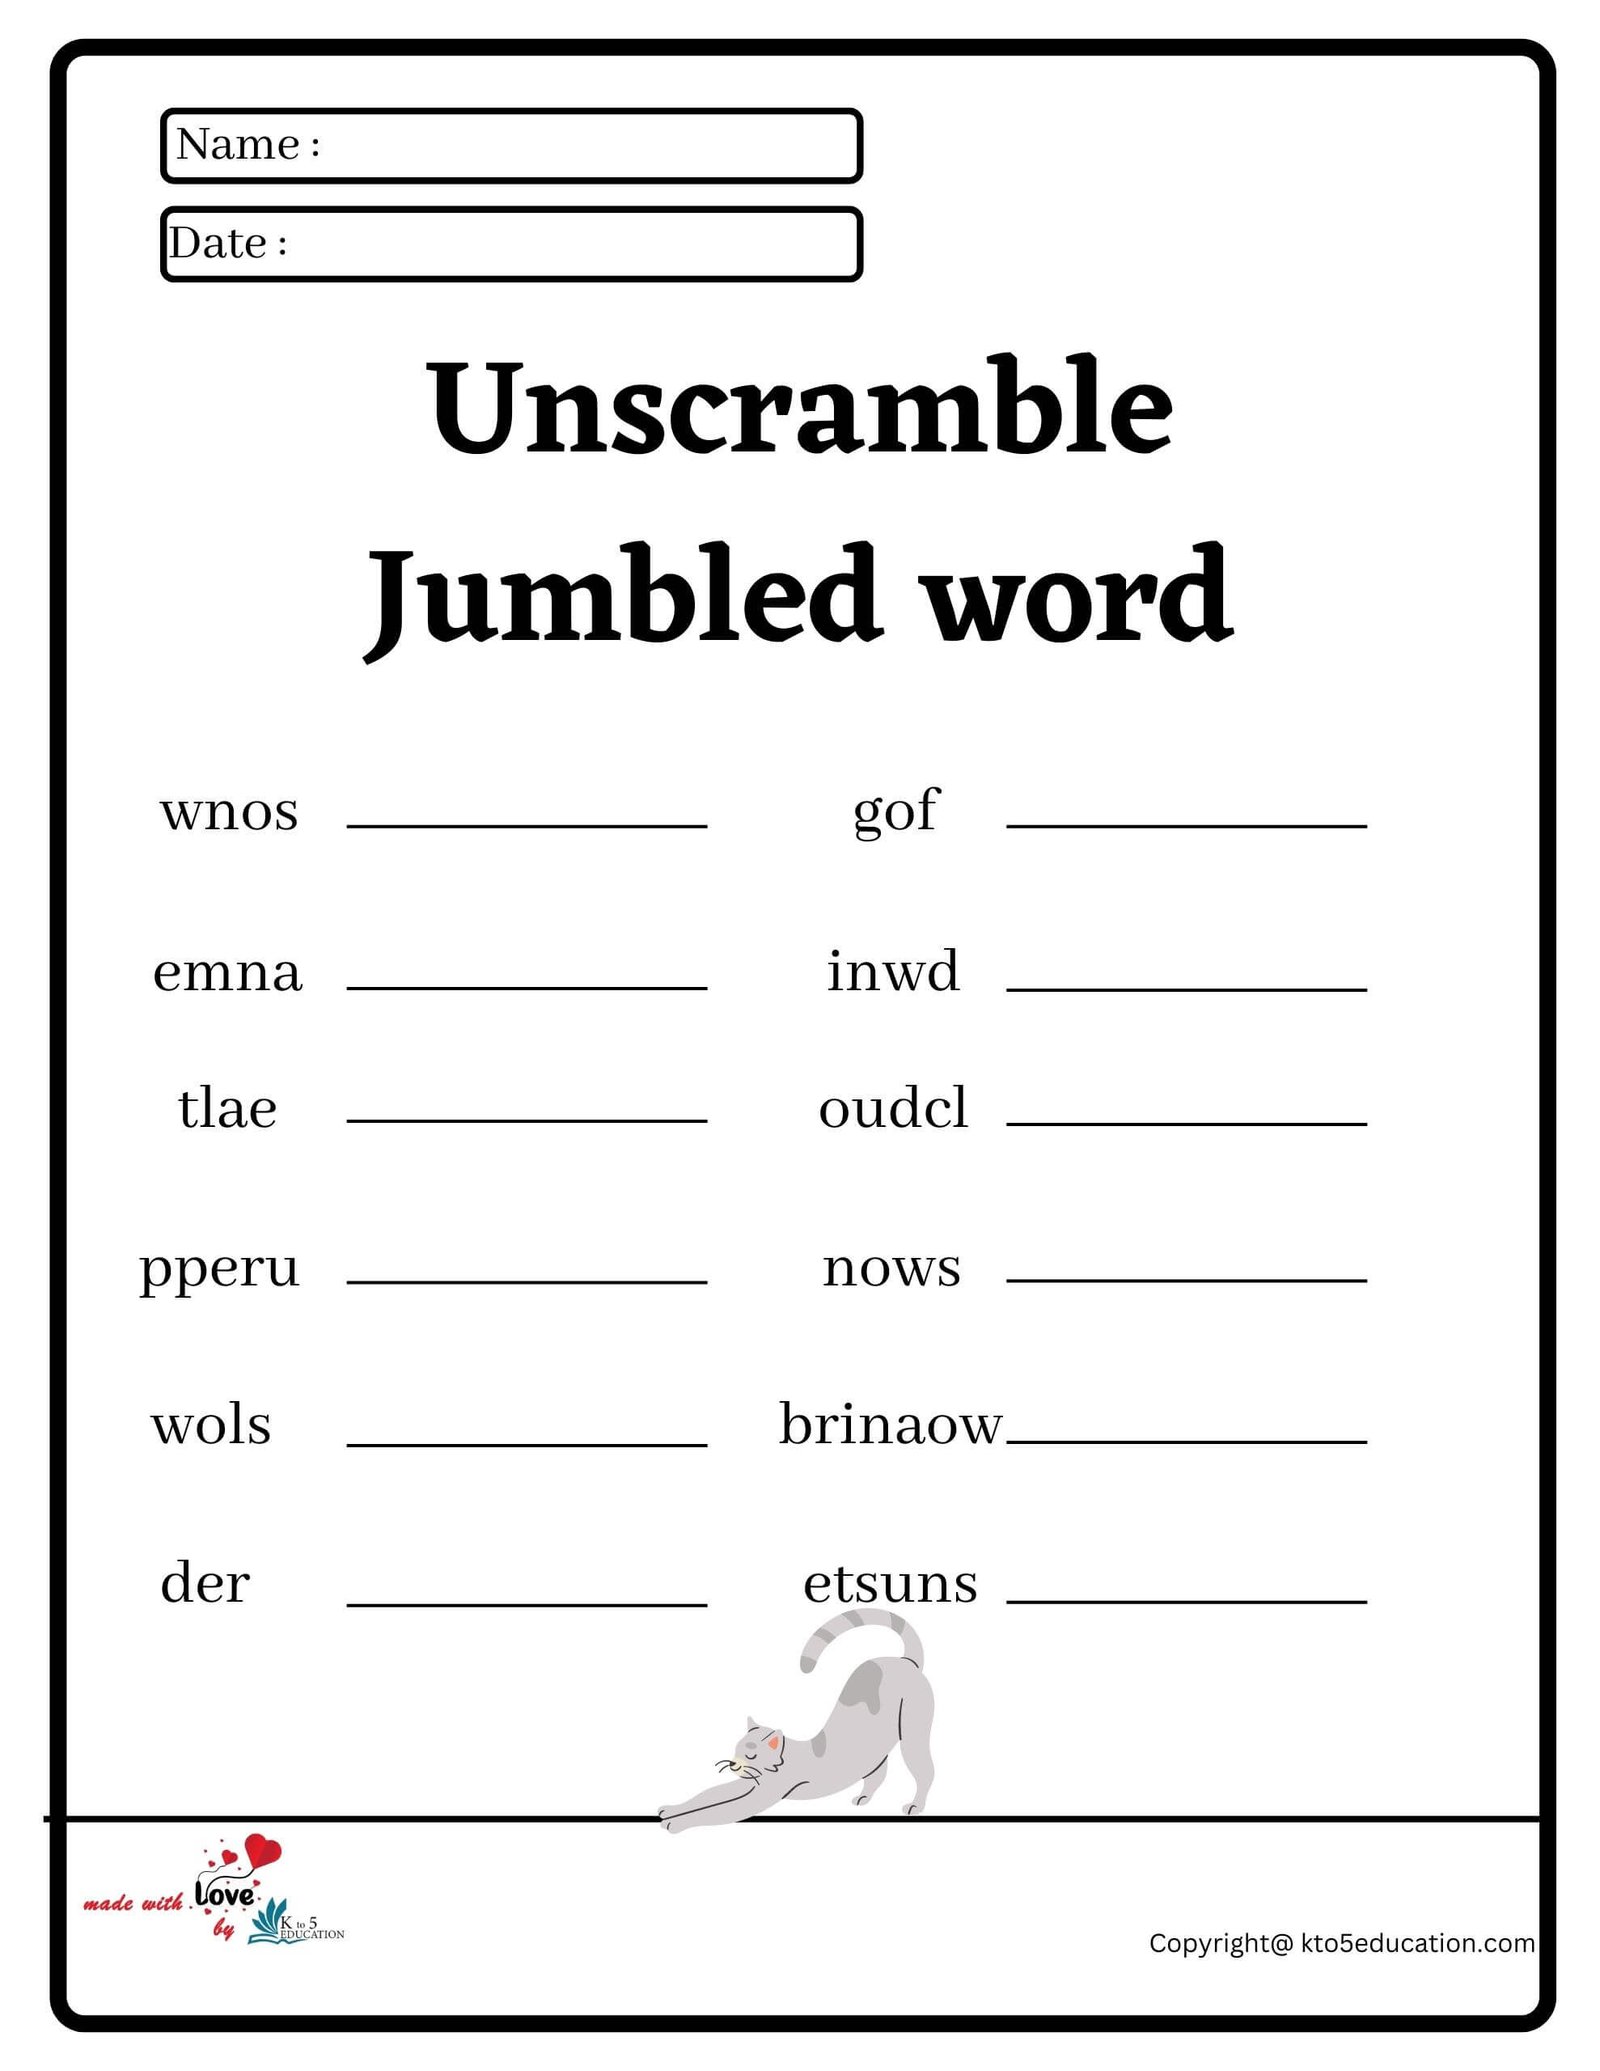 Unscramble Jumbled Word Worksheet